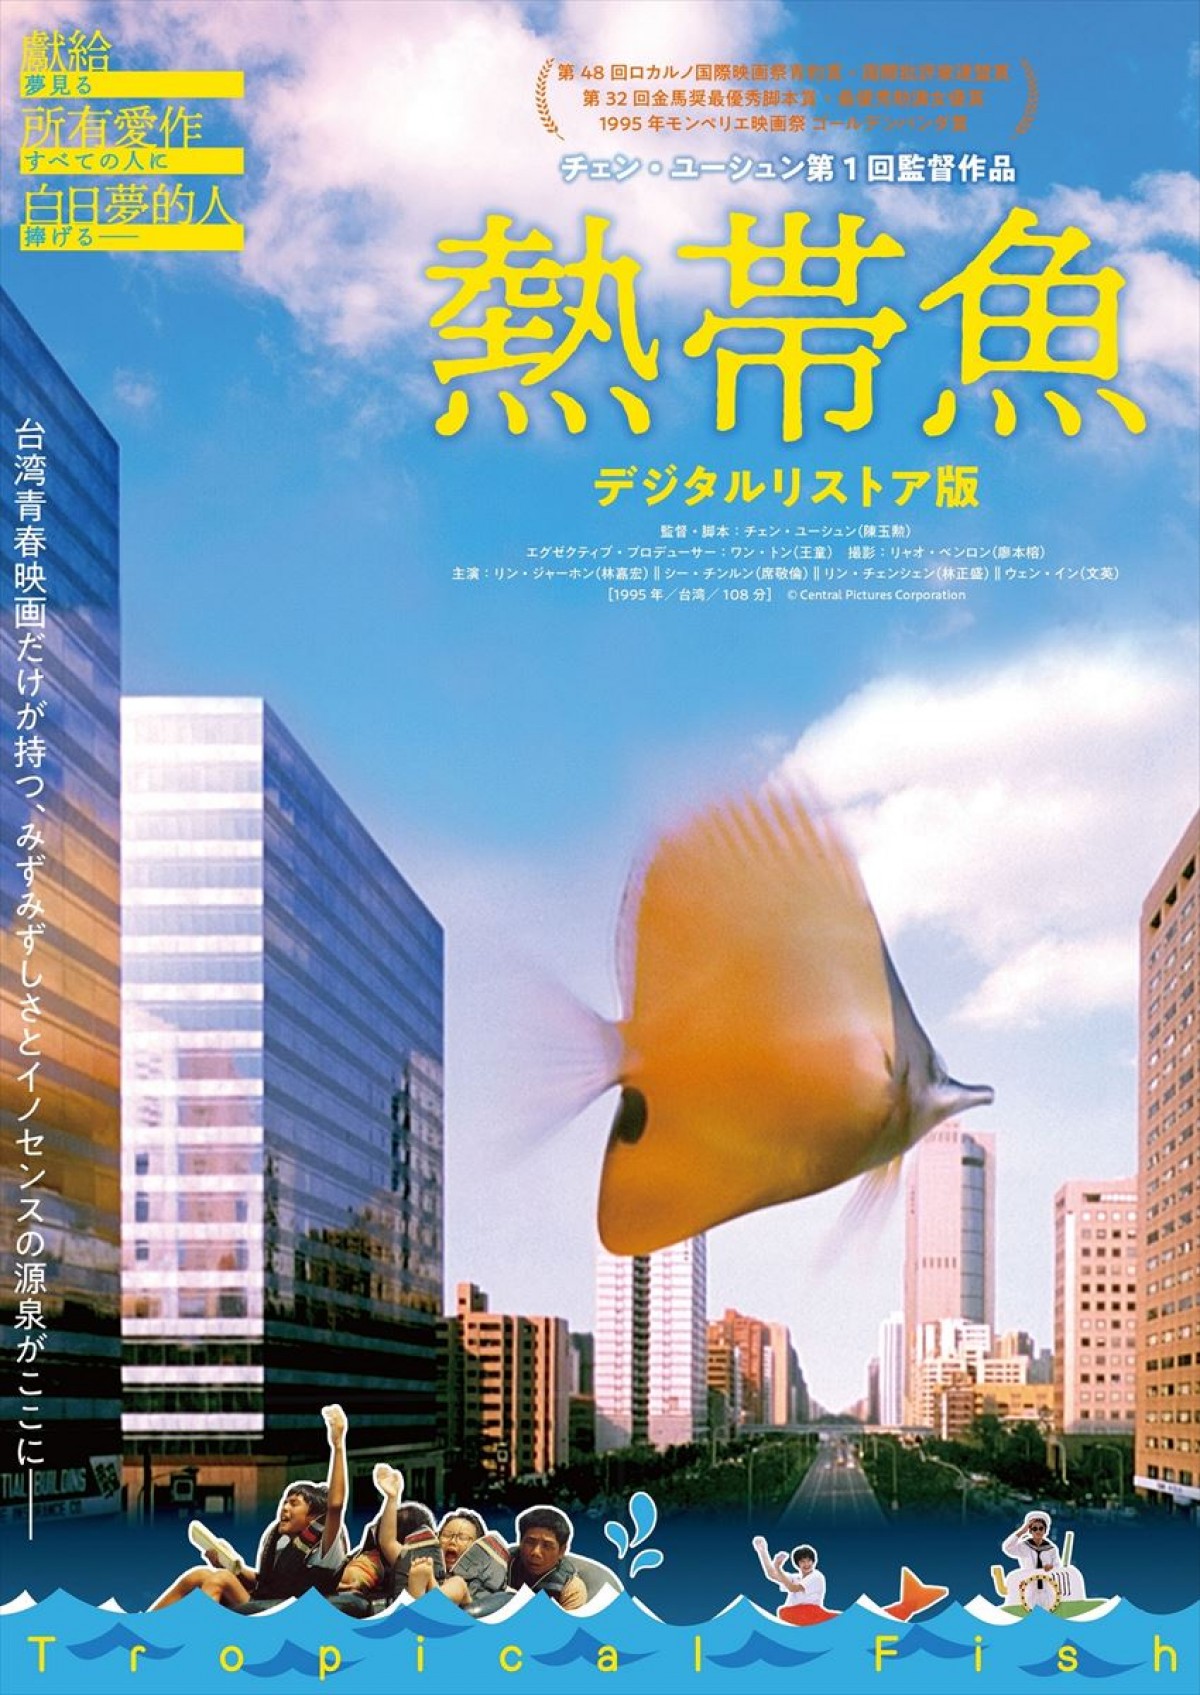 台湾青春映画幻の名作『熱帯魚』『ラブ ゴーゴー』がデジタルリストア版で公開